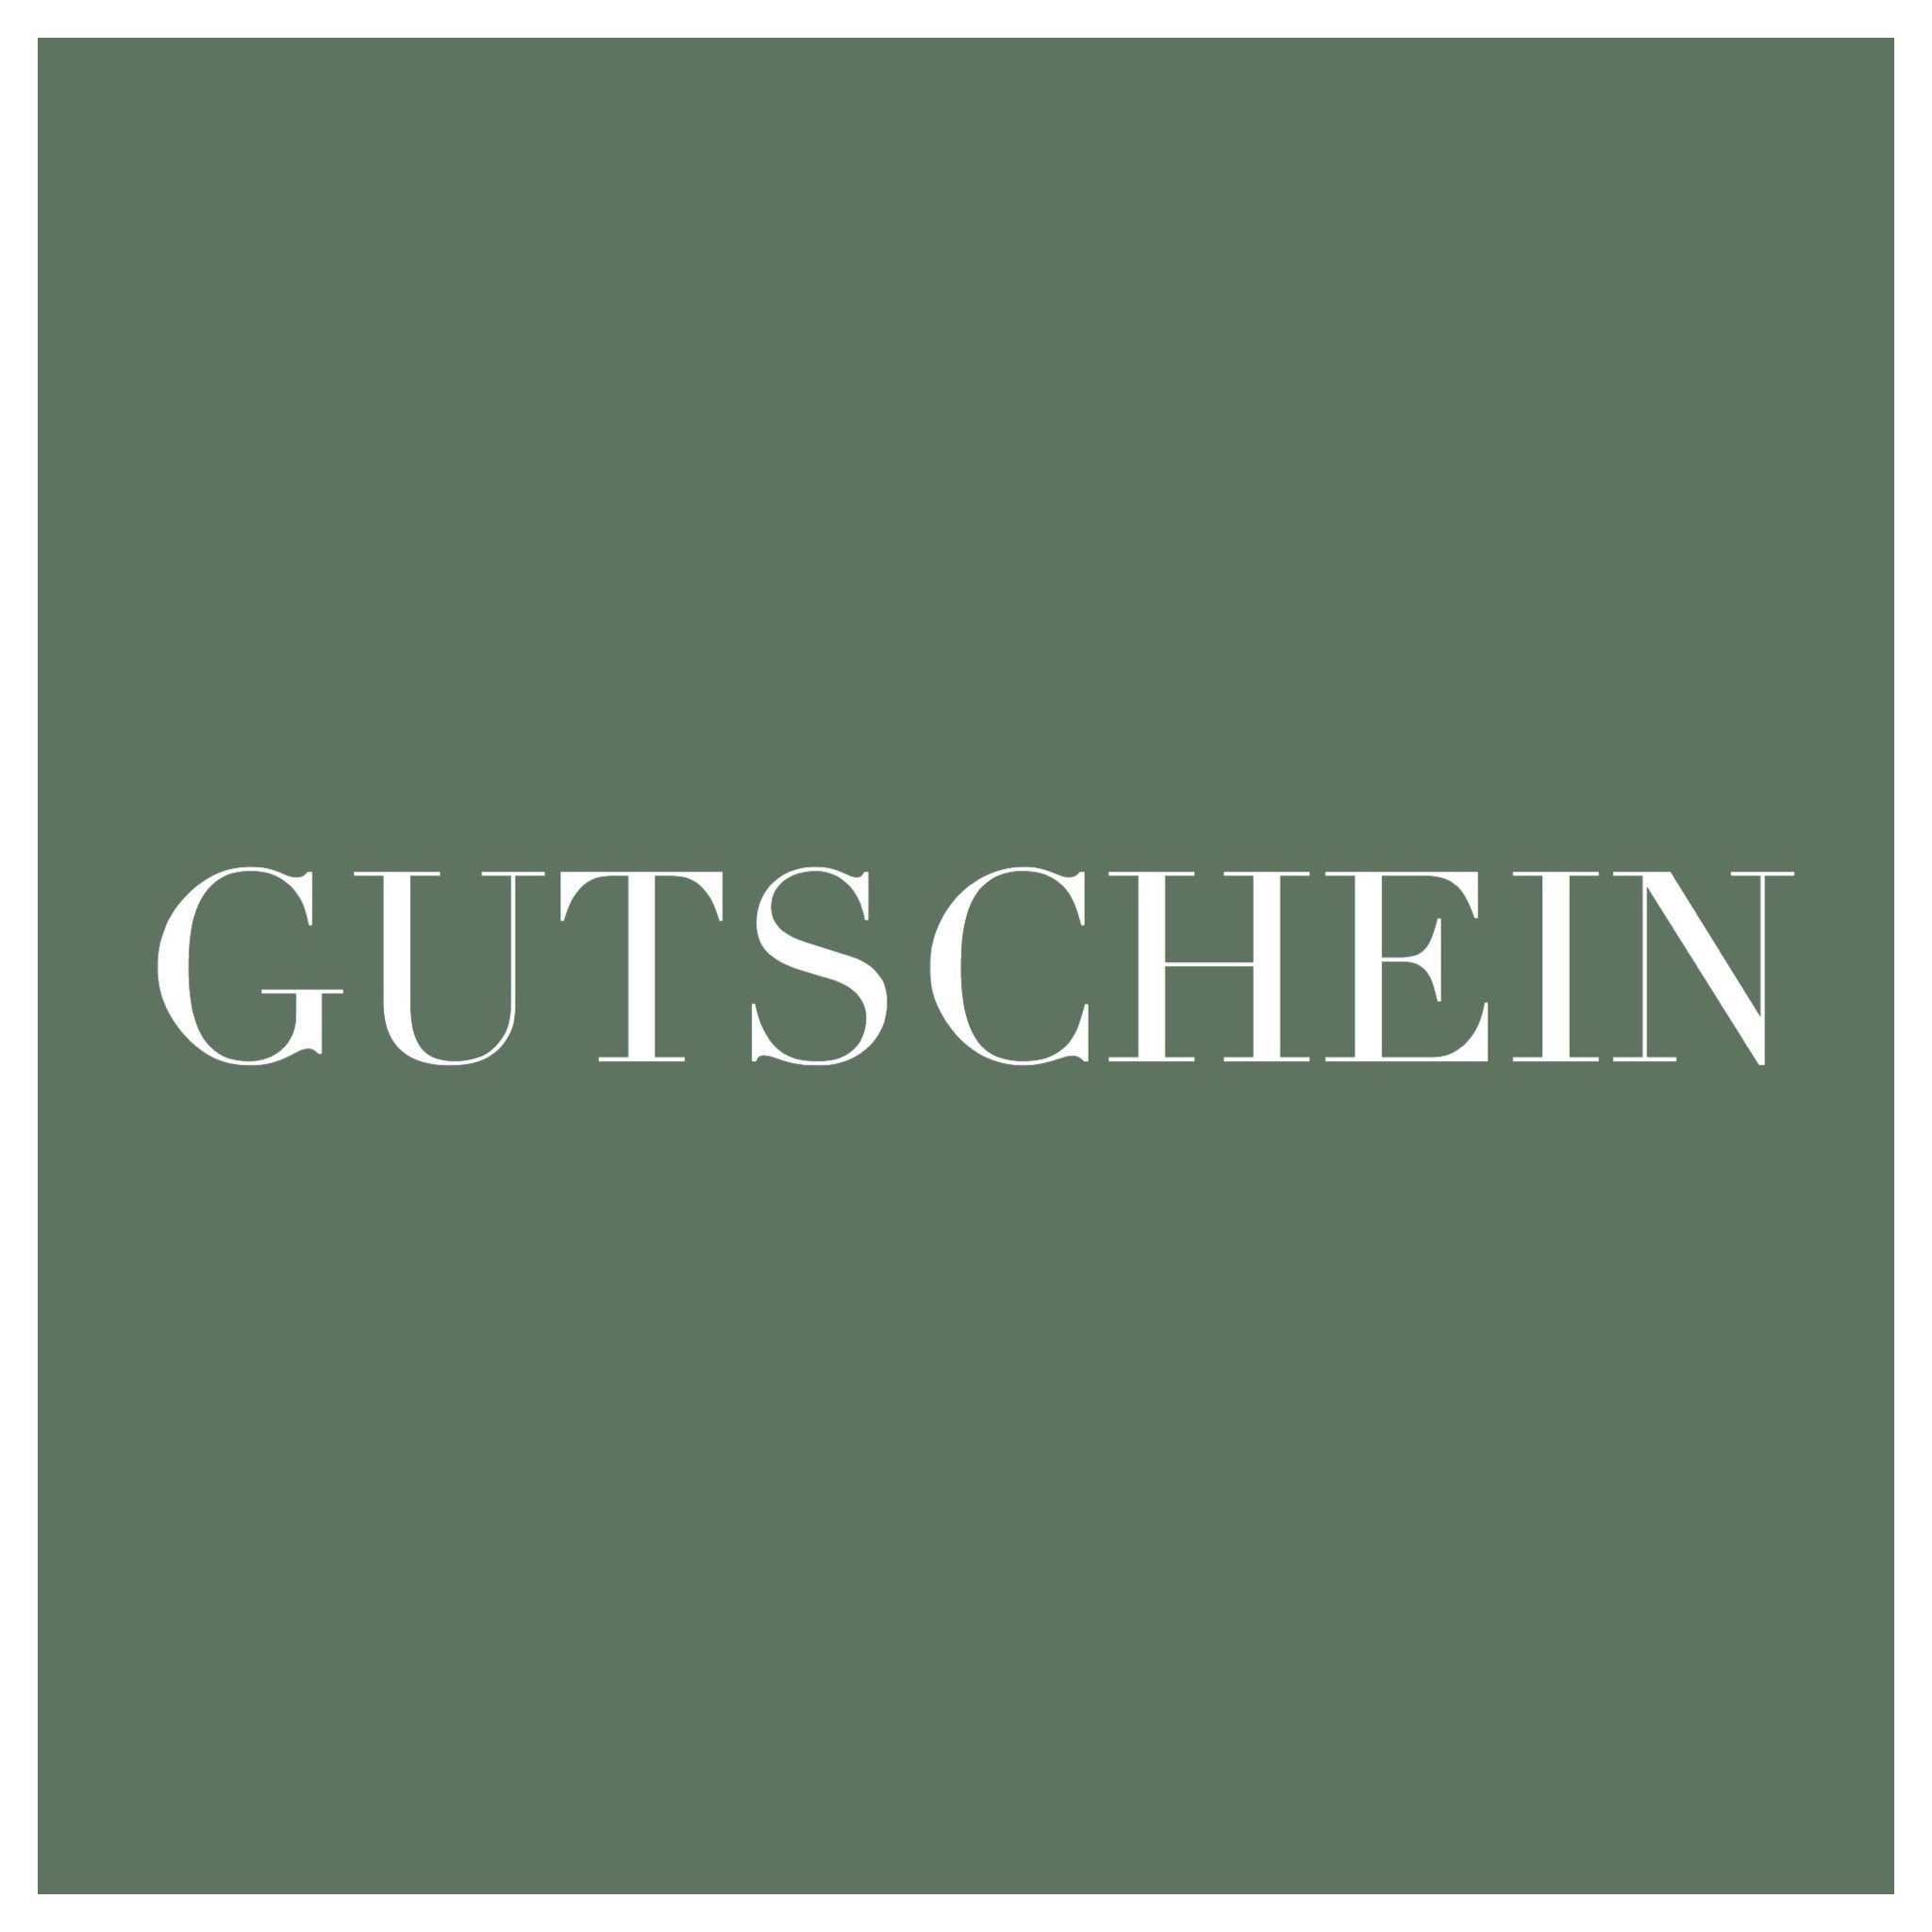 GUTSCHEIN | GIFT CARD